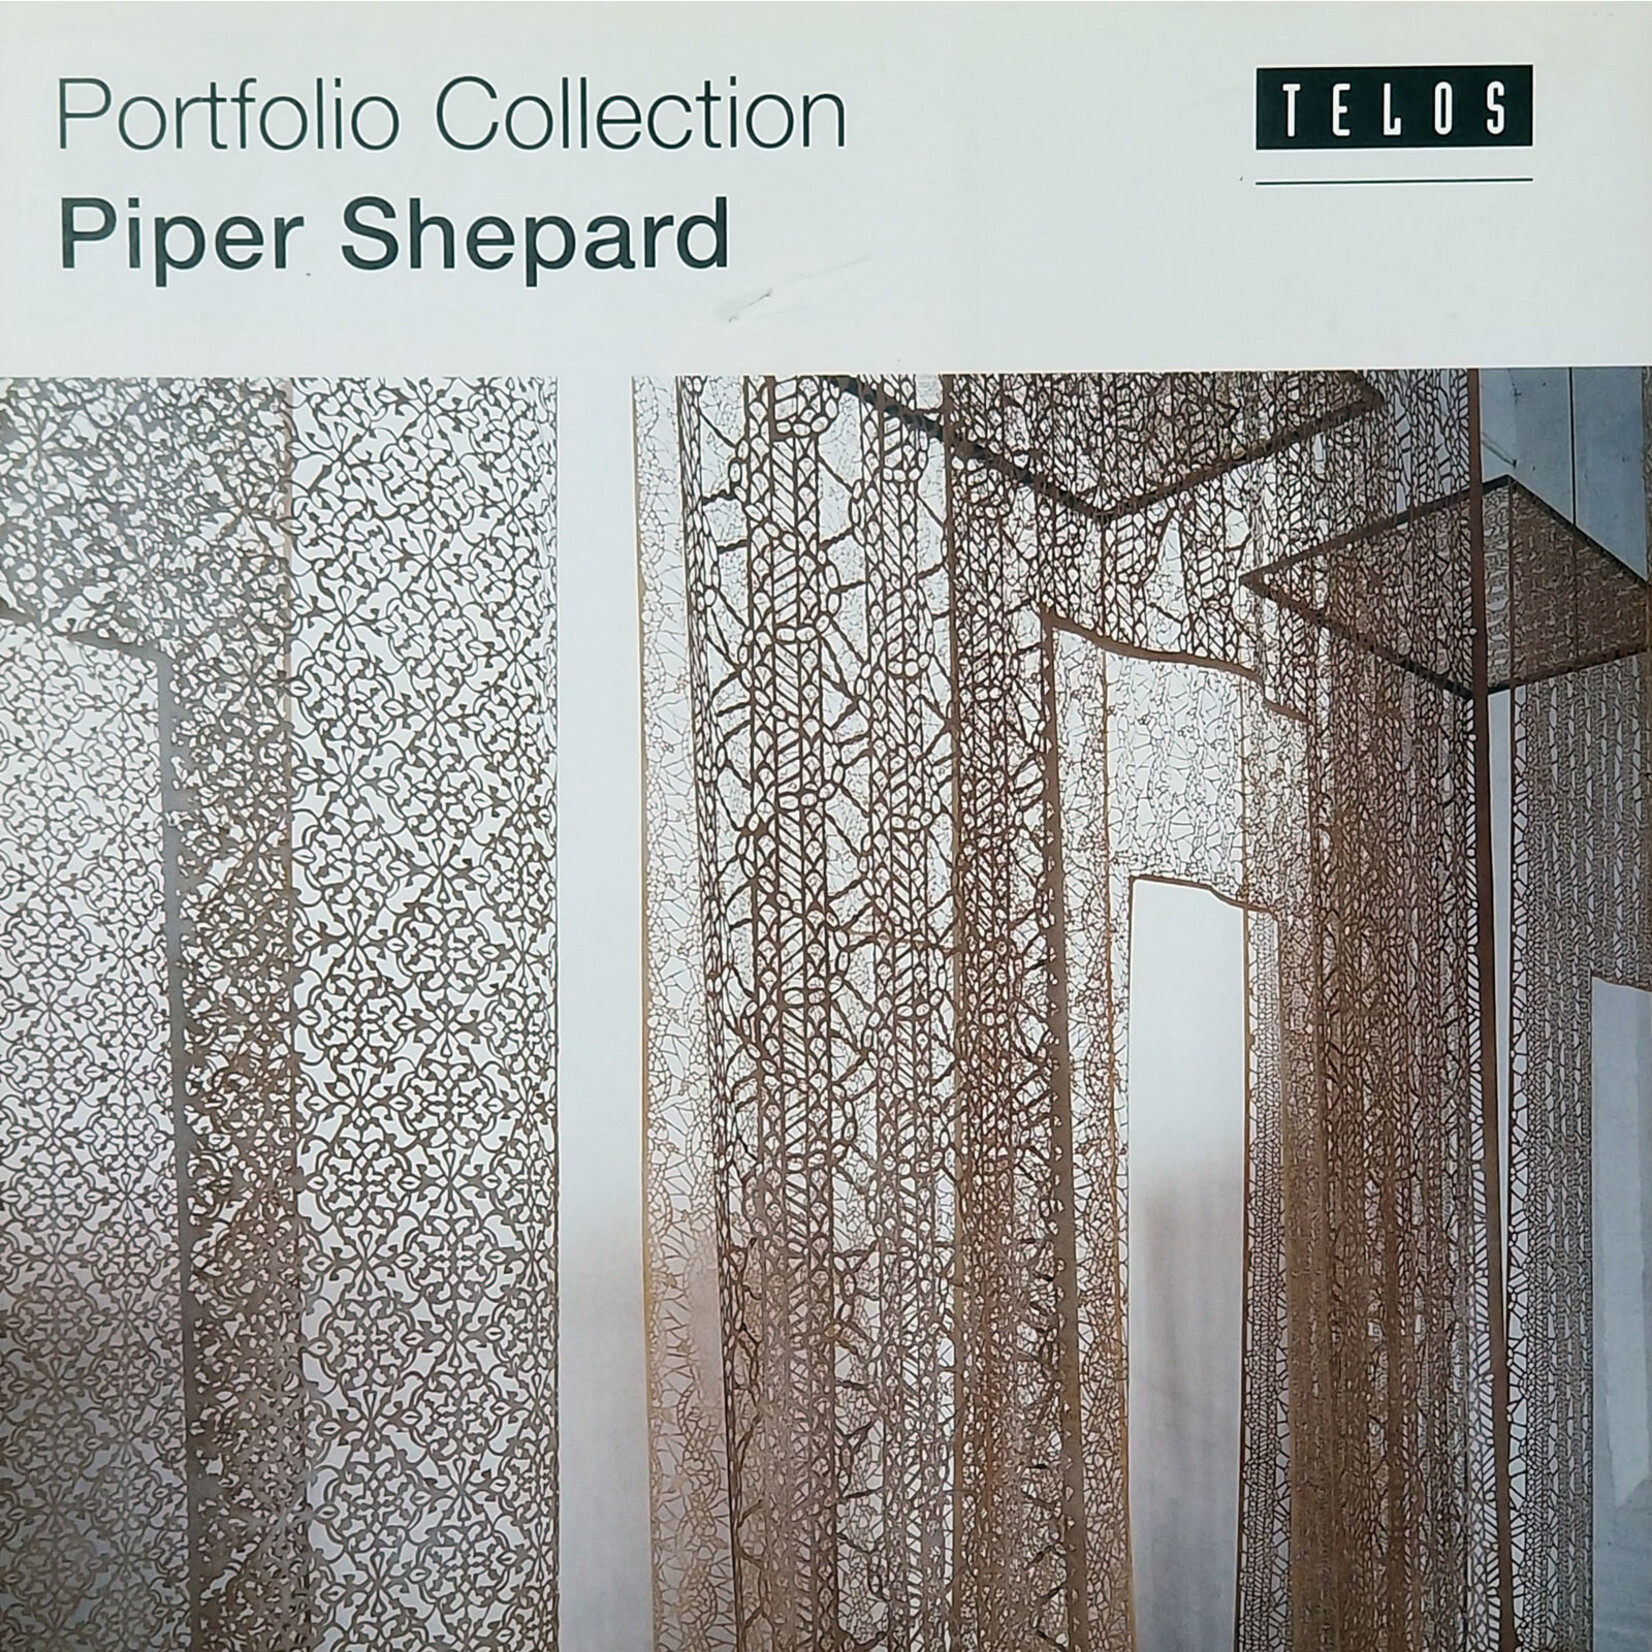 Portfolio Collection: Piper Shepard